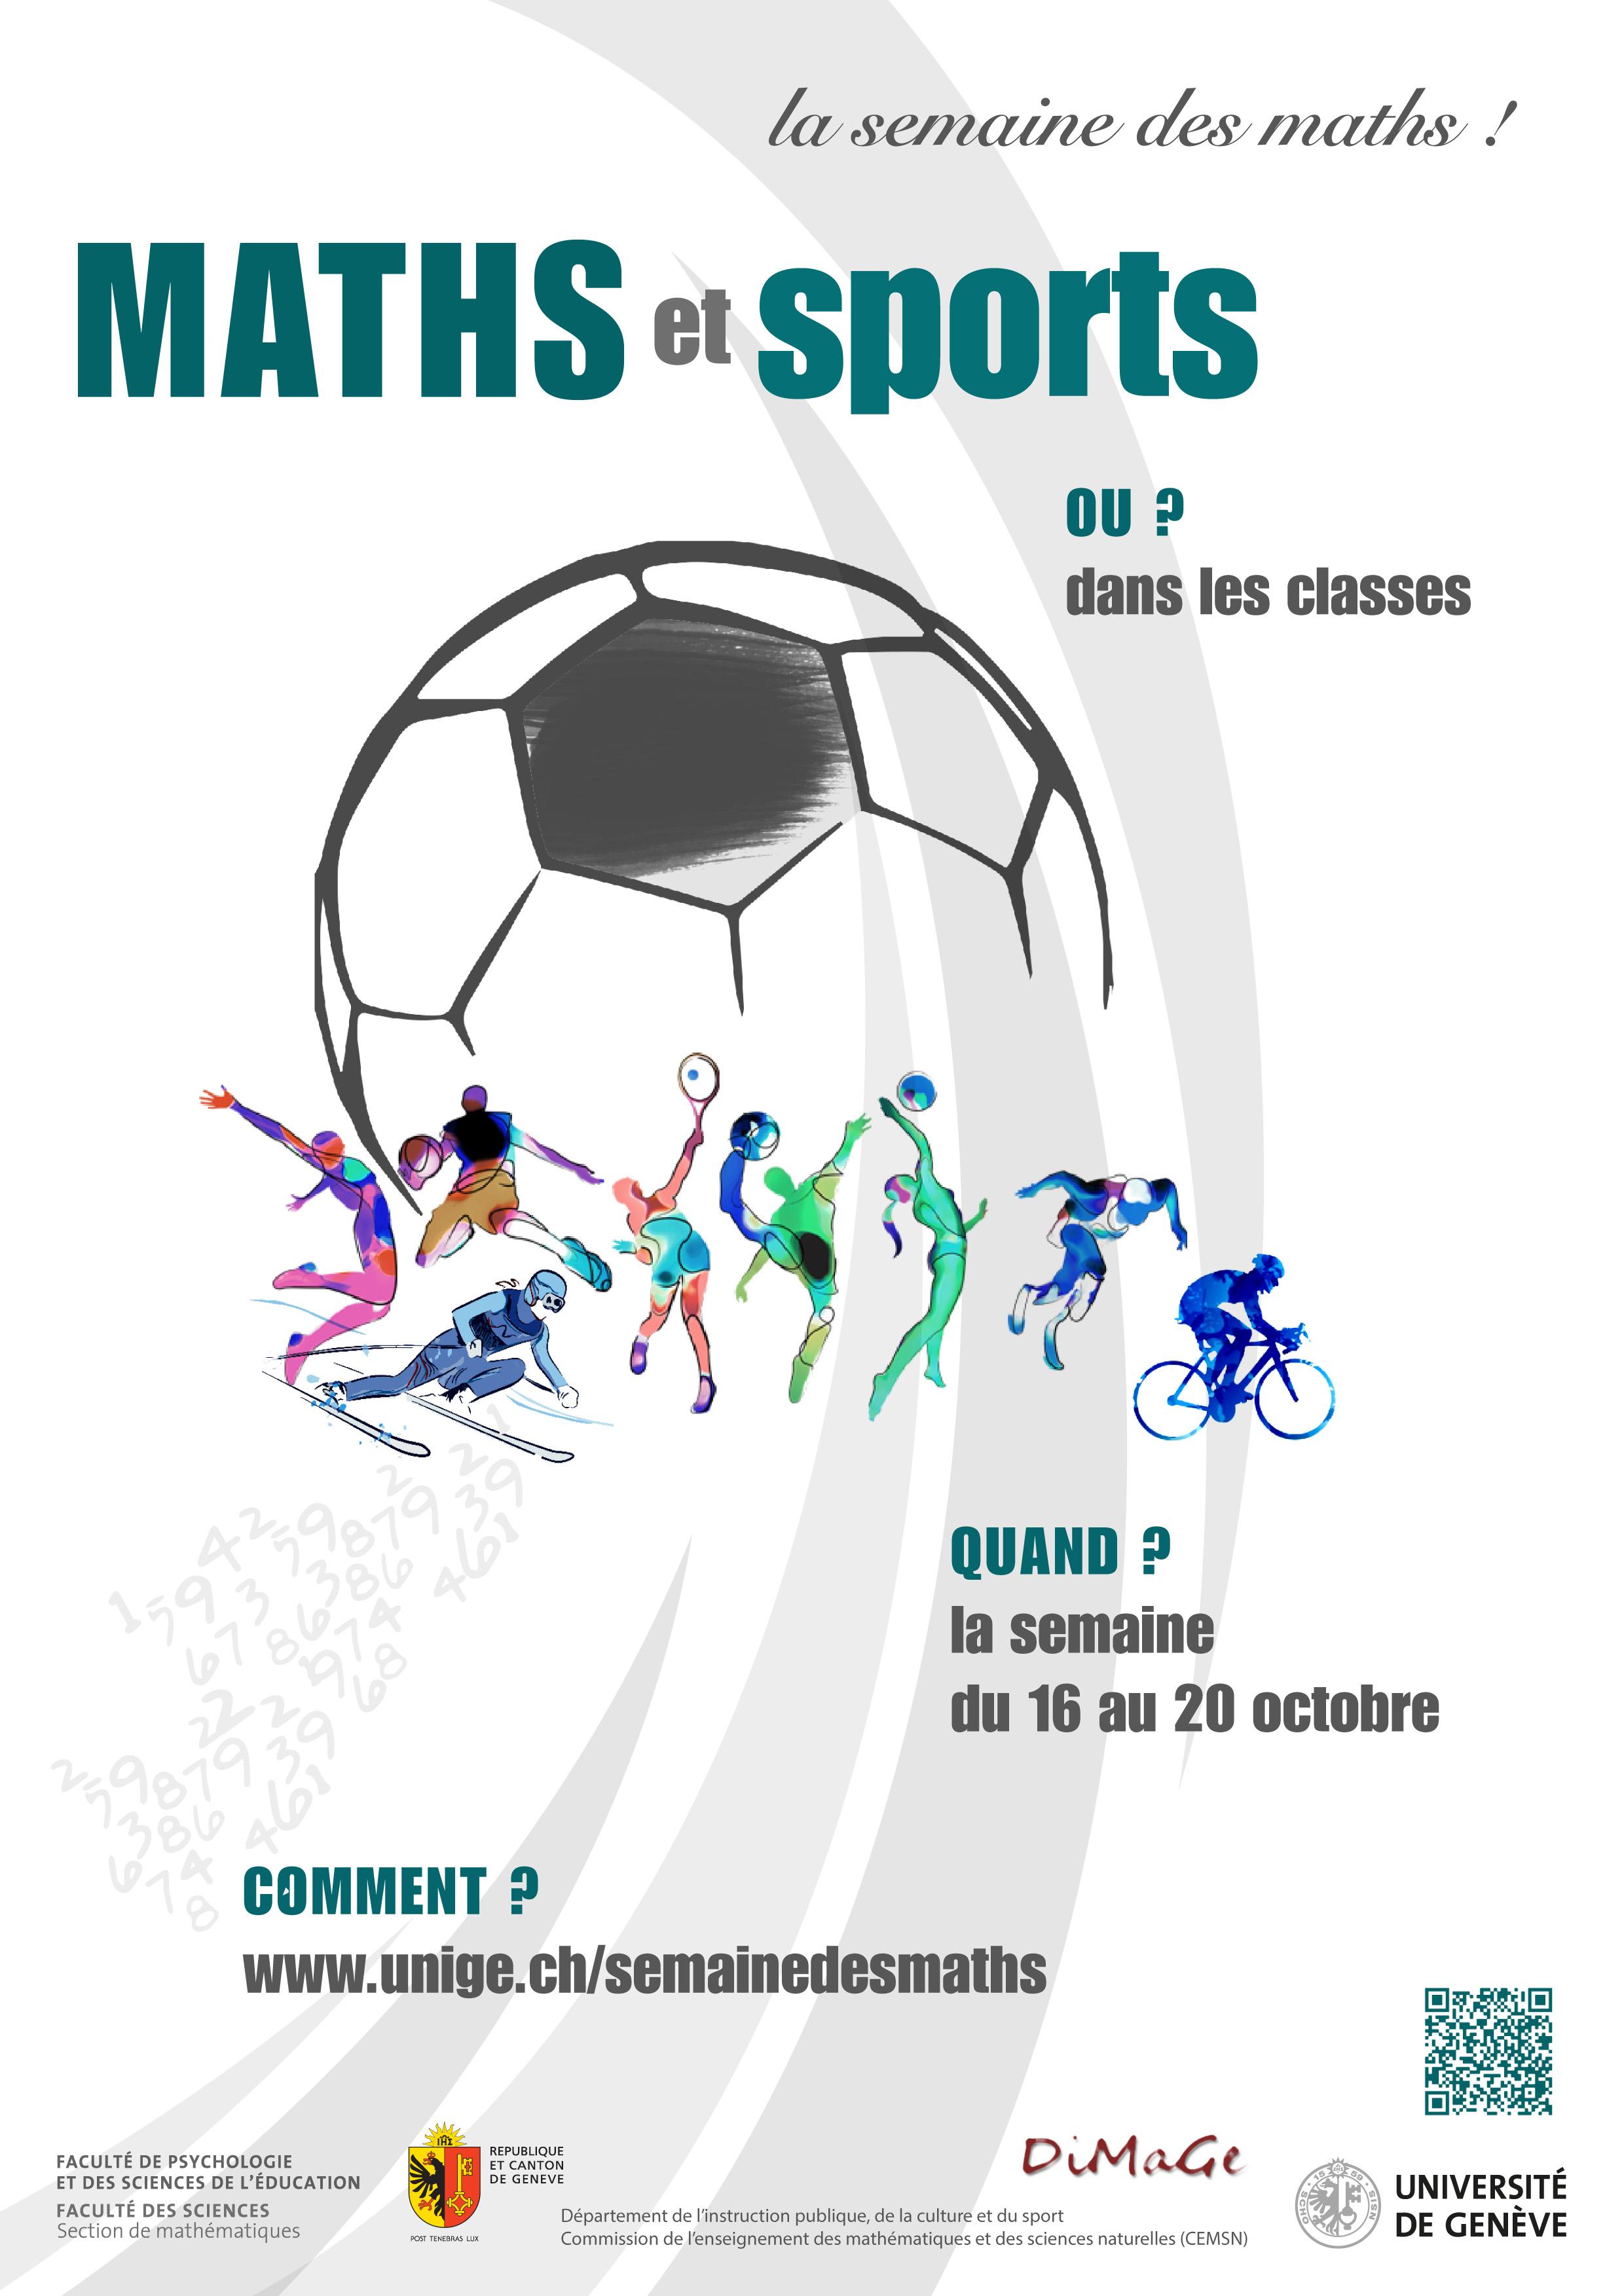 La Semaine des maths 2017 combine maths et sports [République et canton de Genève - UNIGE]